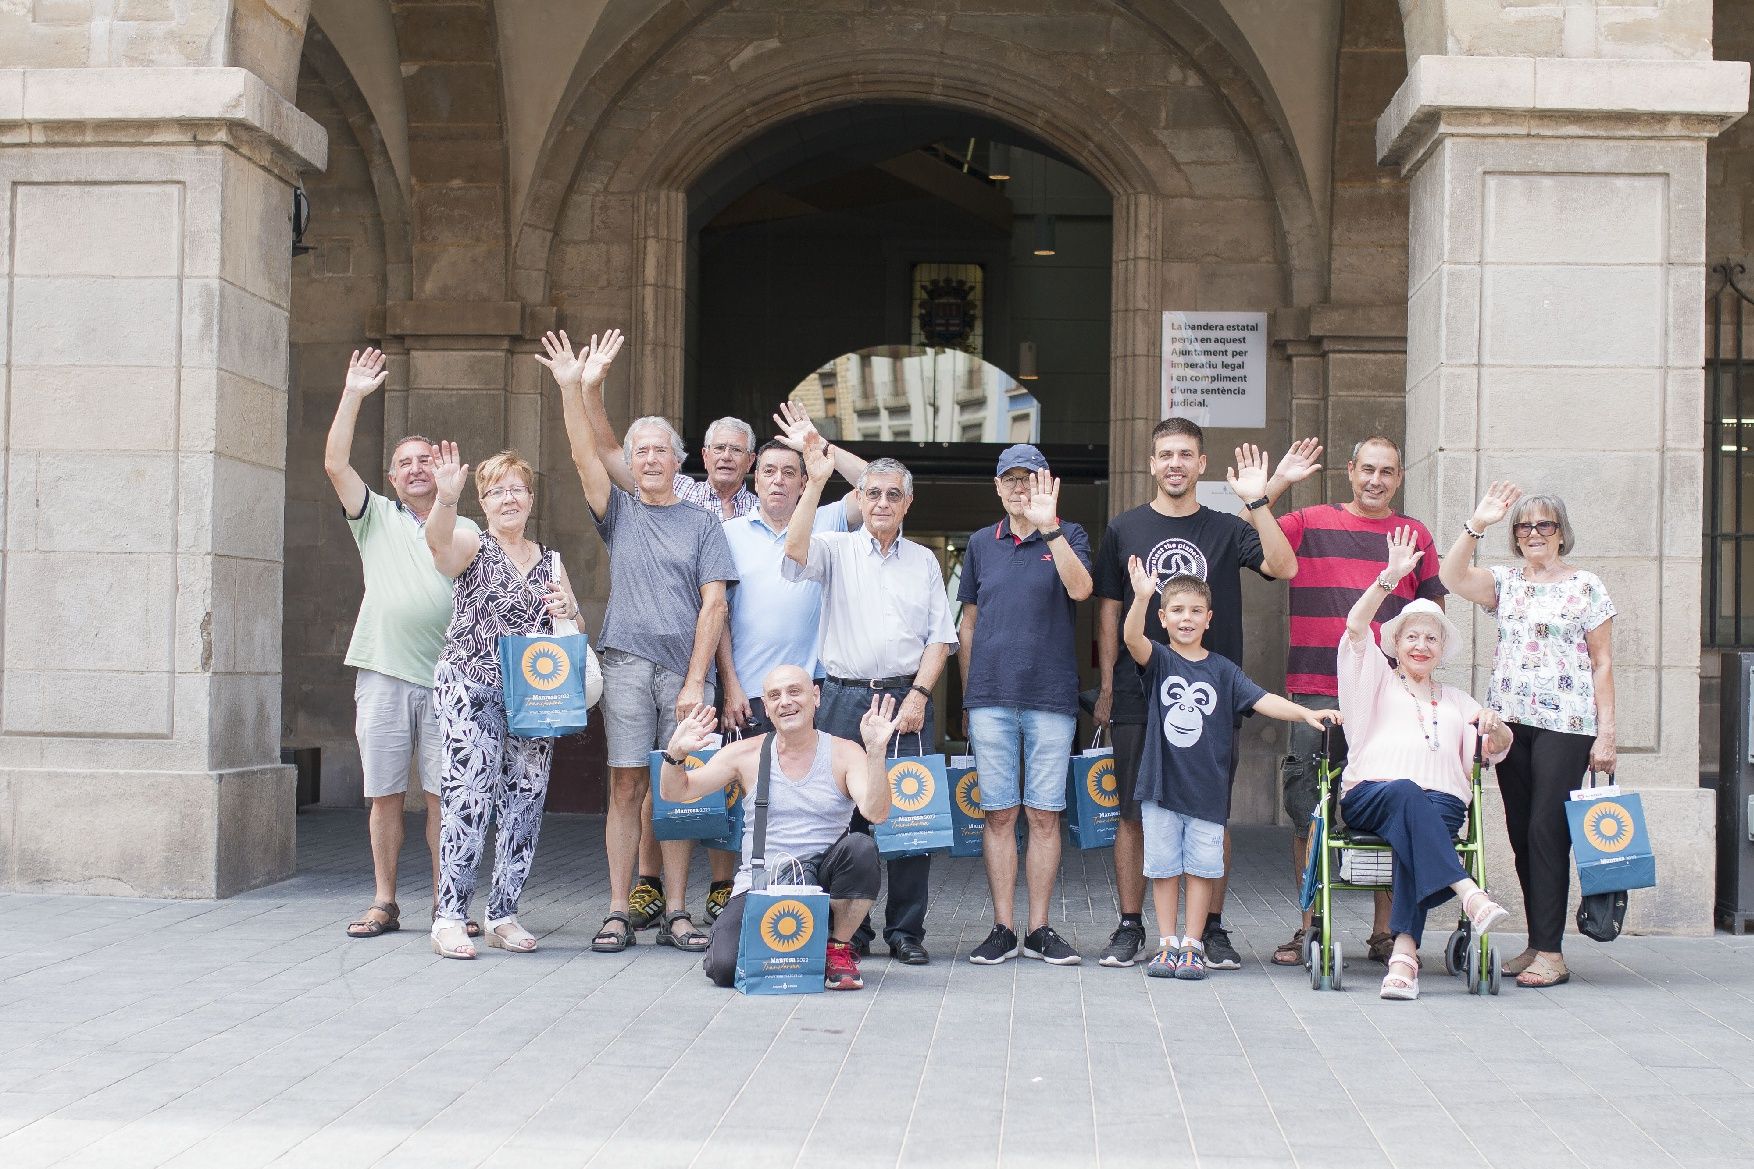 Les festes de Sant Ignasi omplen d'alegria i comunió el centre històric